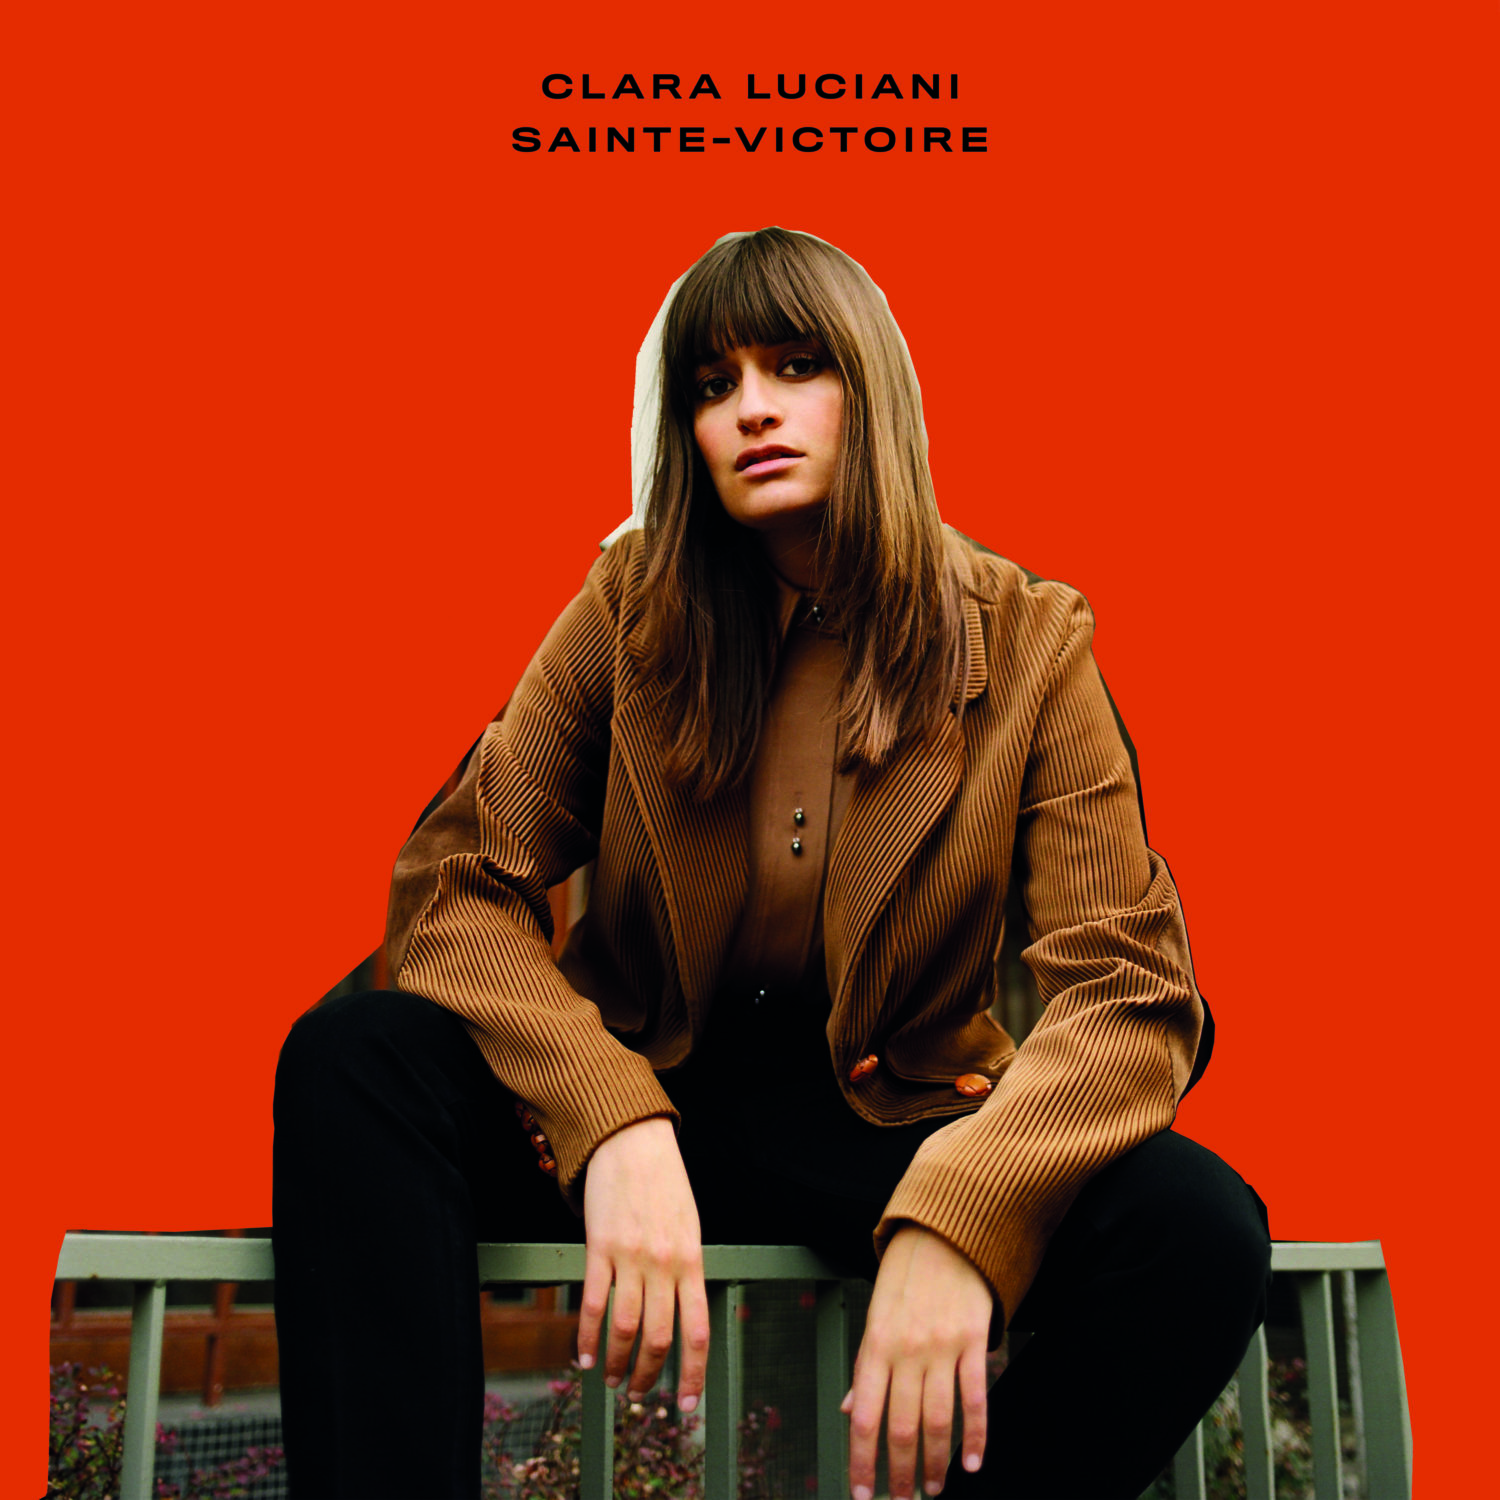 Clara Luciani sort son premier album « Sainte-Victoire », un véritable joyau pop